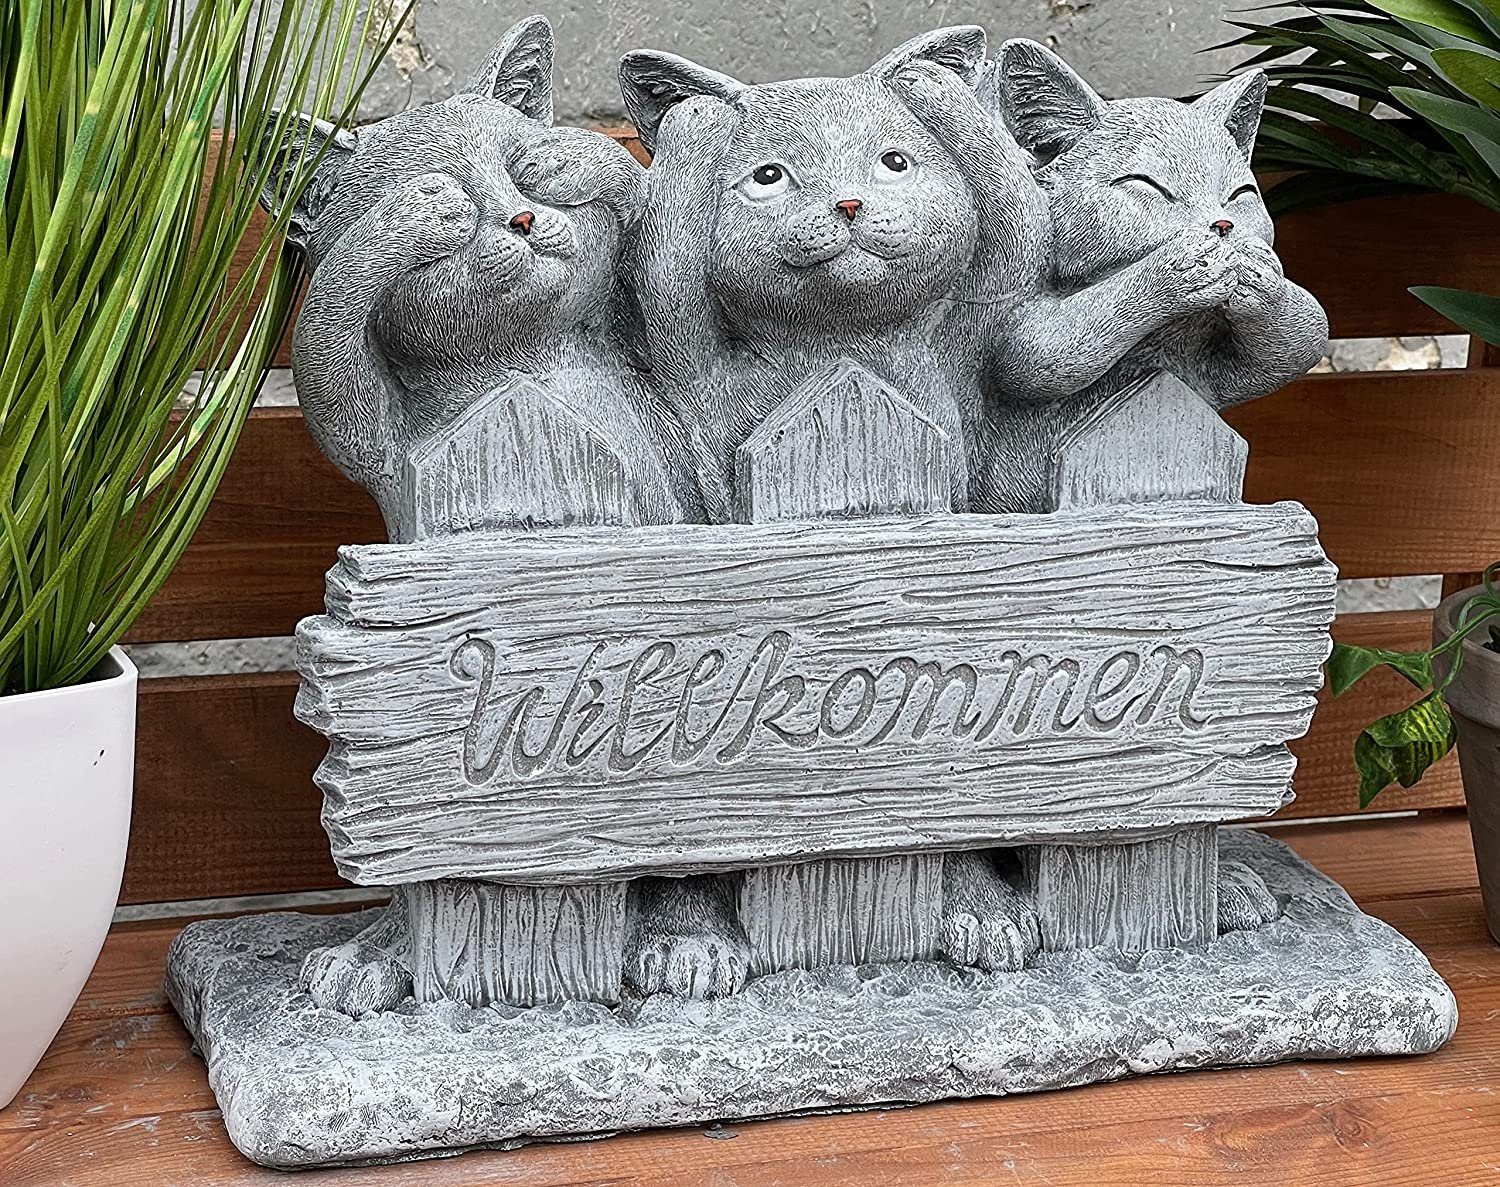 Willkommen Stone and Style Trio Gartenfigur Katzen